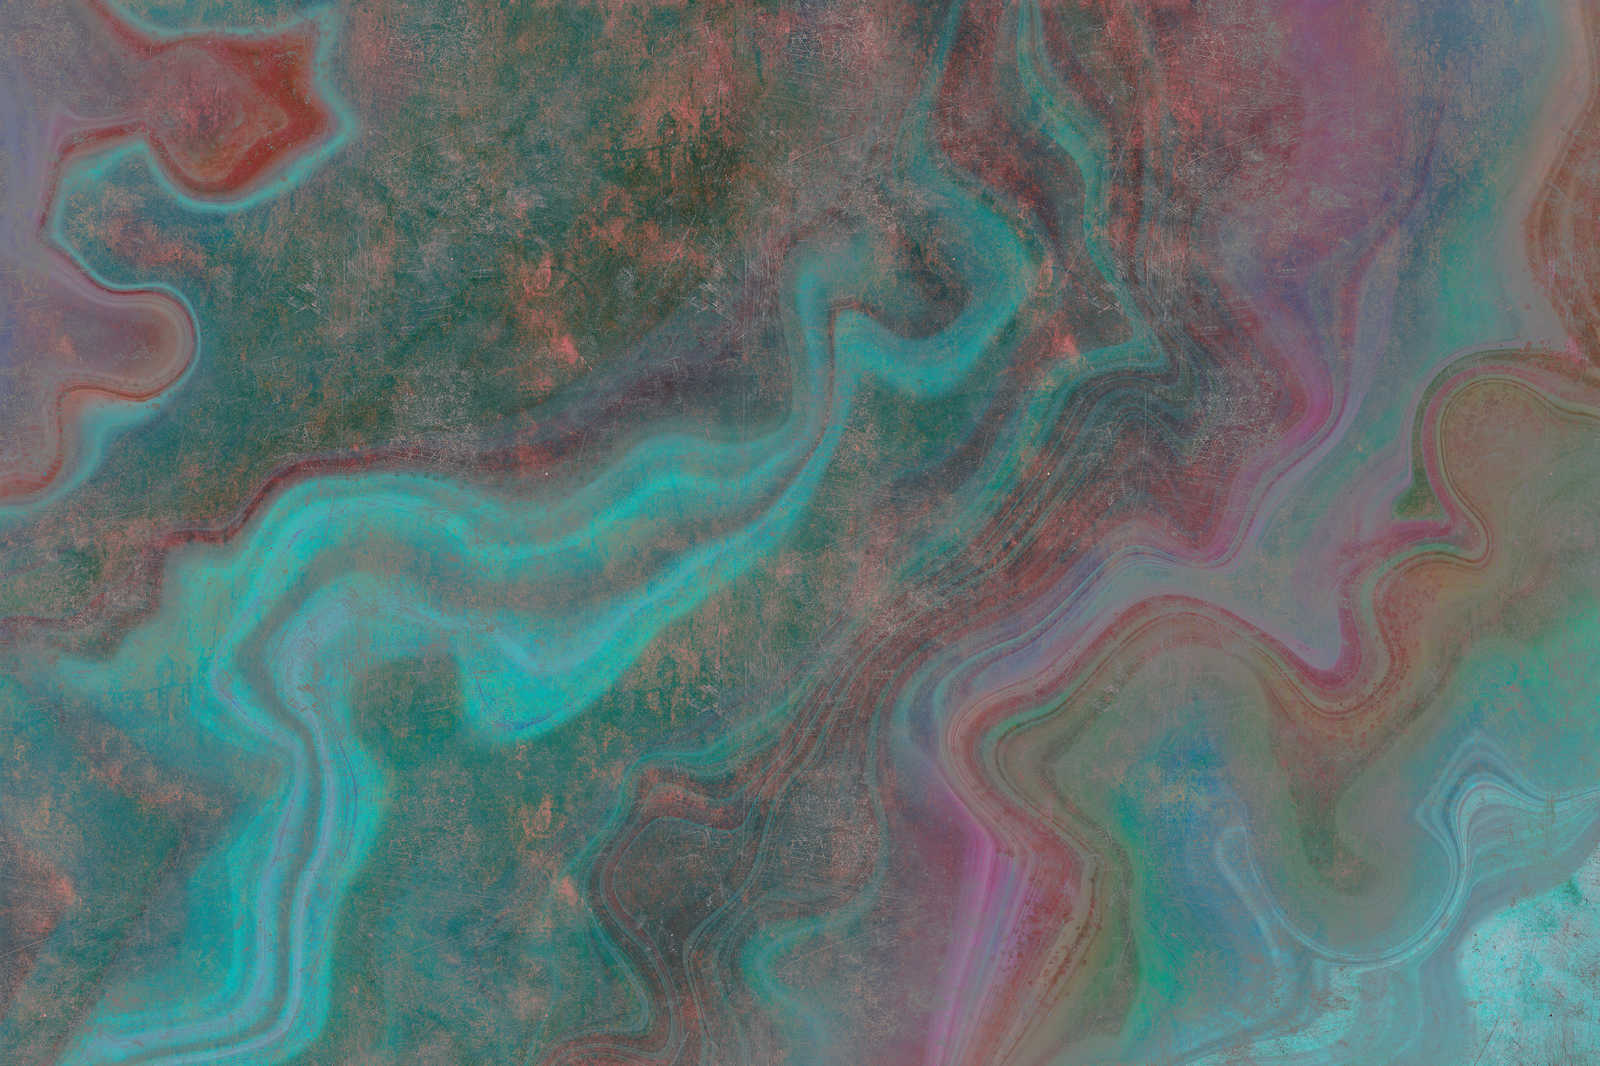             Mármol 3 - Pintura sobre lienzo con estructura rayada en mármol de colores como realce - 0,90 m x 0,60 m
        